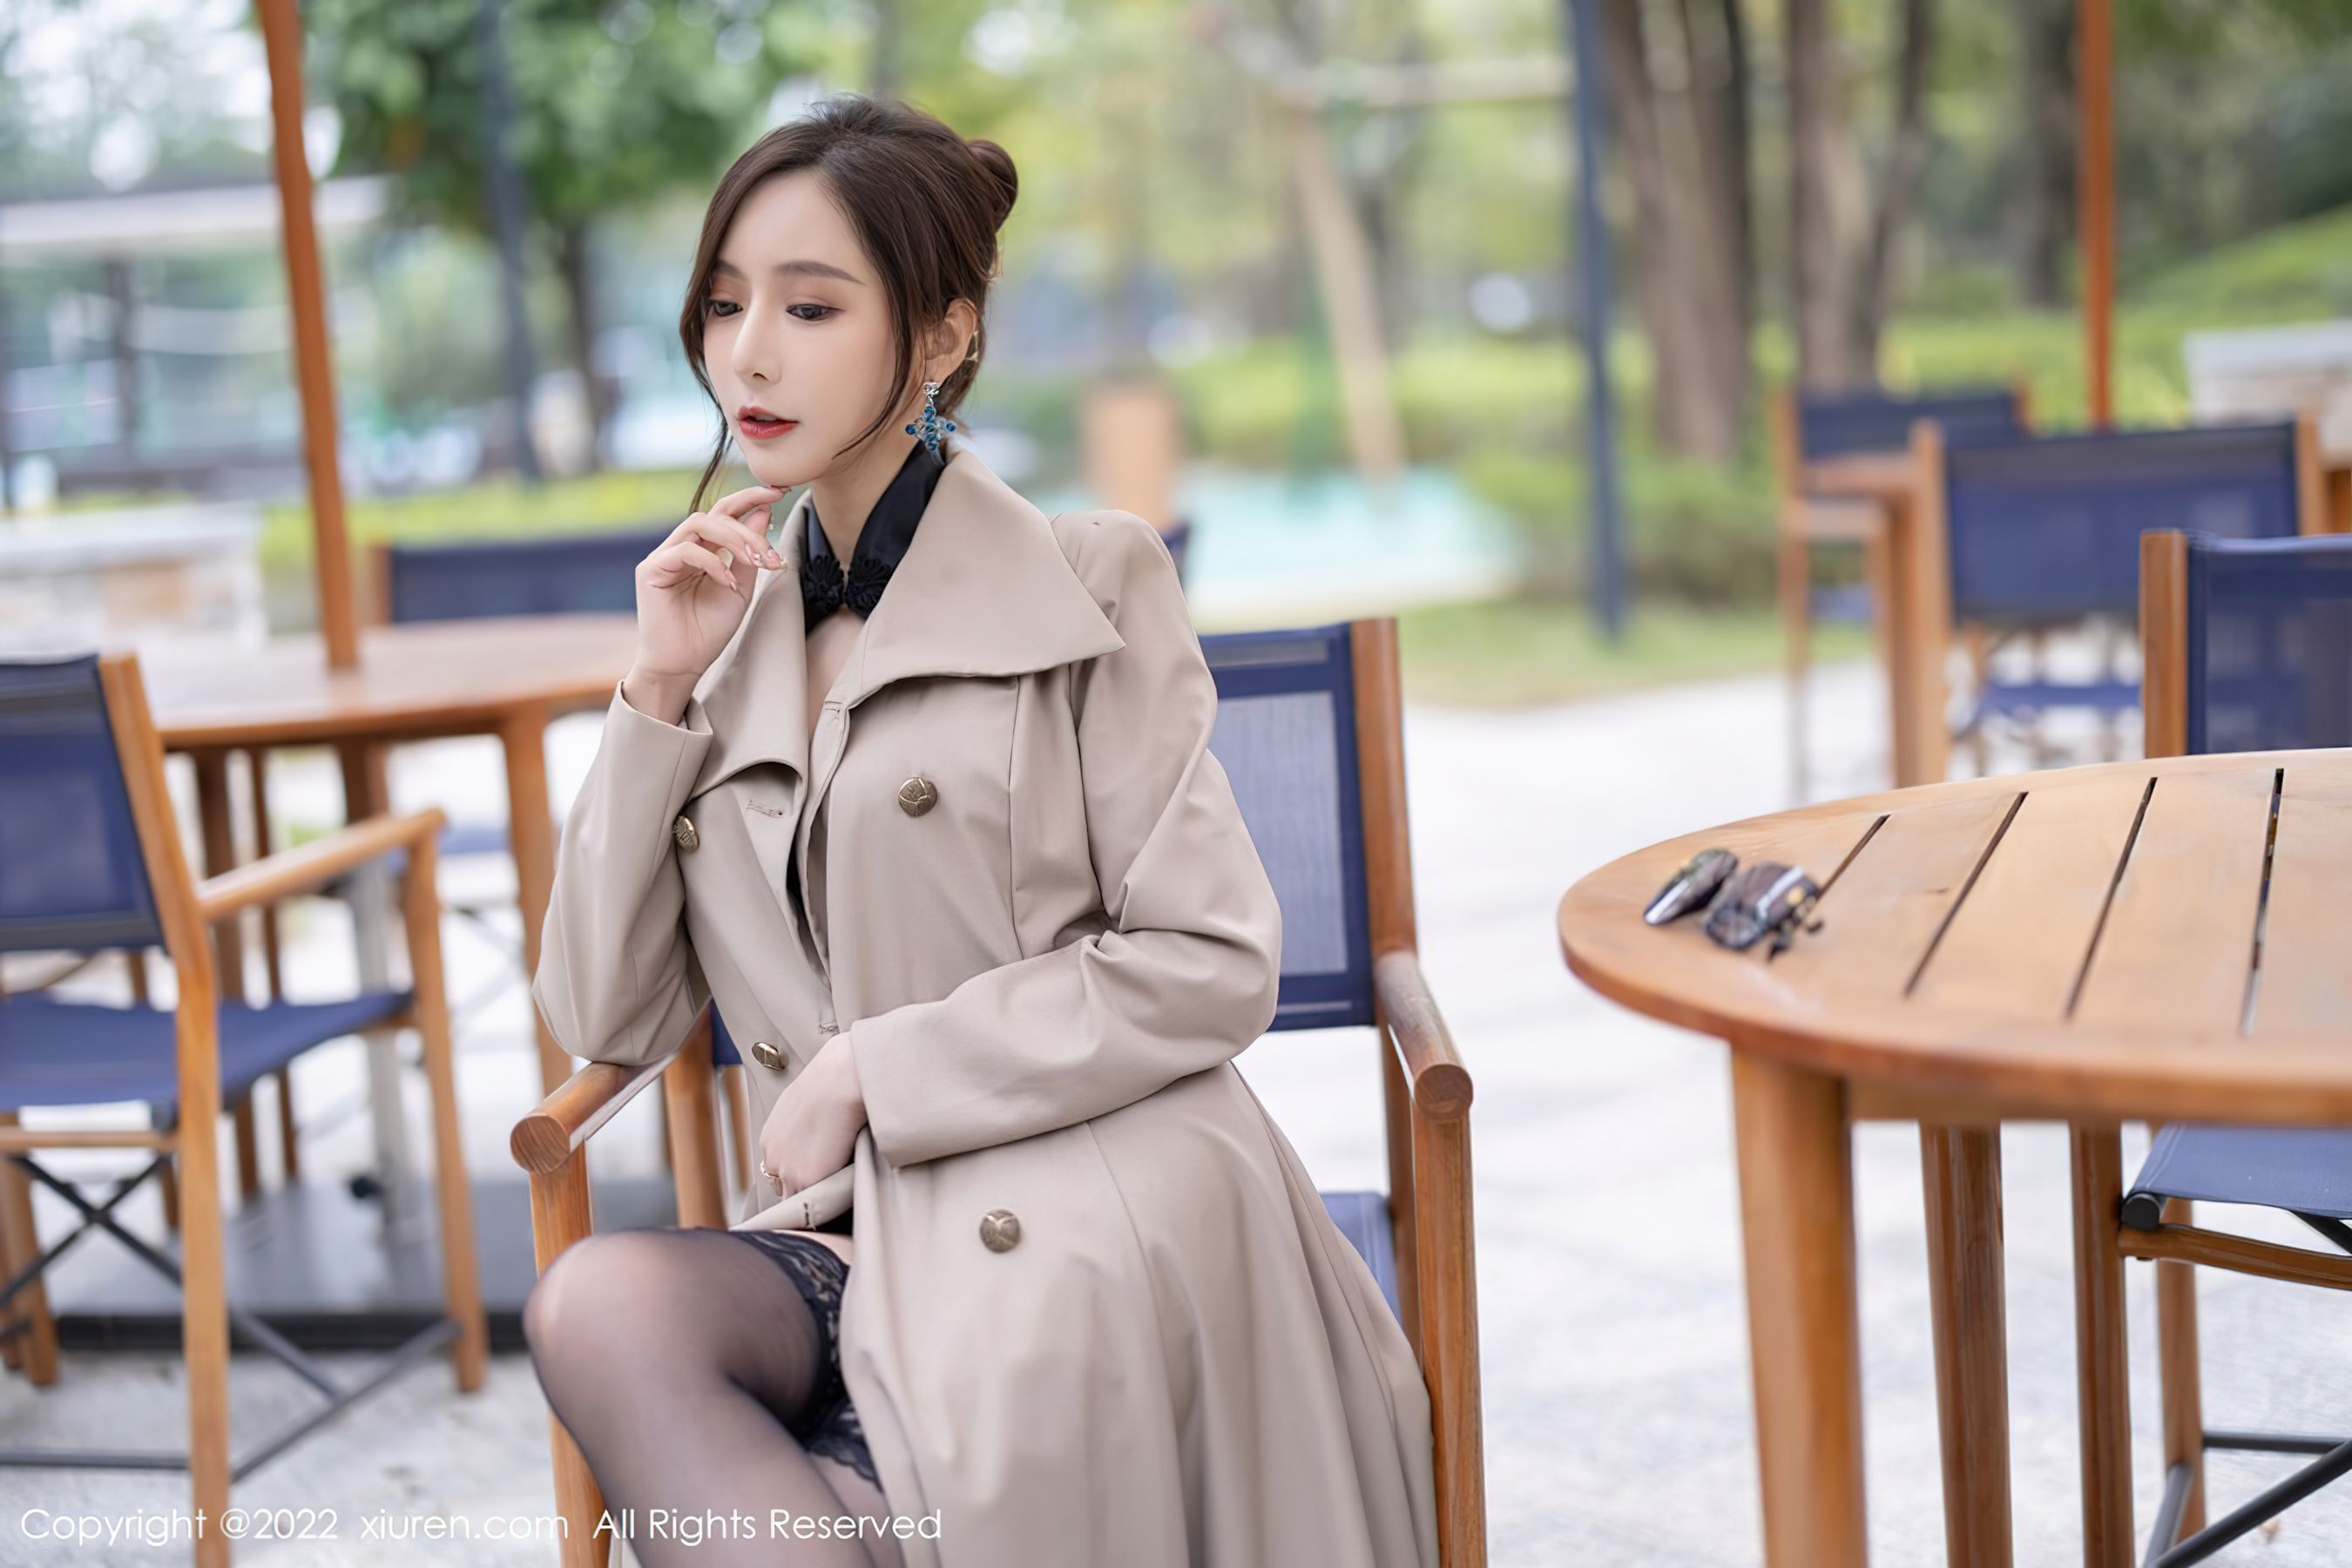 People 2700x1800 model Xiuren qingyao wang Asian stockings women